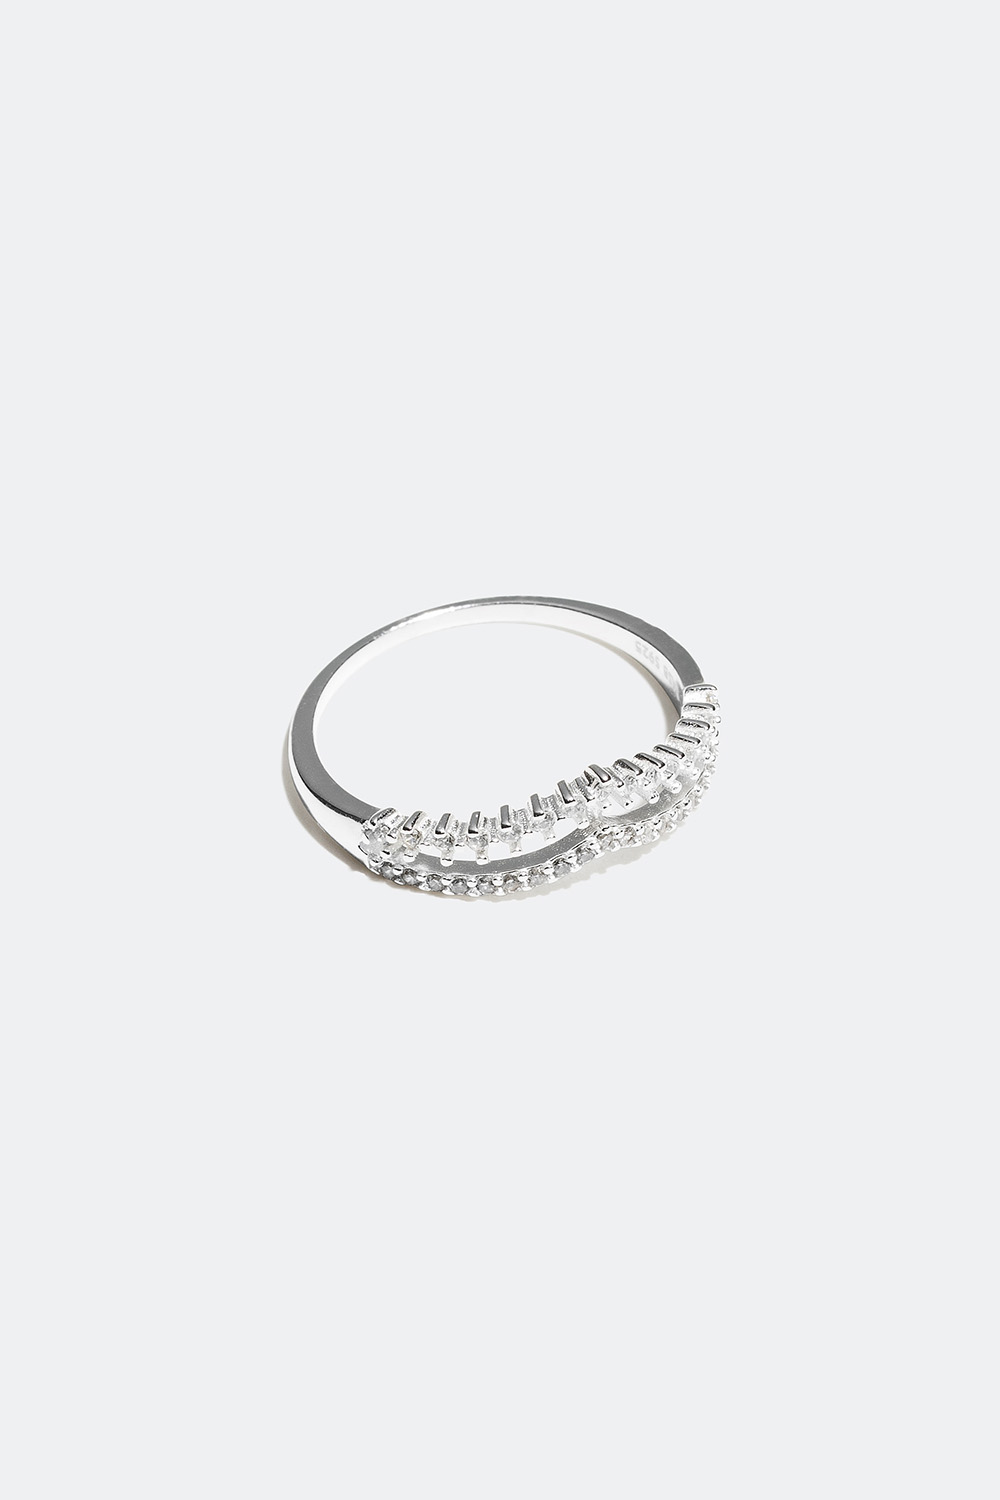 Ring i äkta silver med v-formad design i gruppen Äkta silver / Silverringar / Silver hos Glitter (55600006)